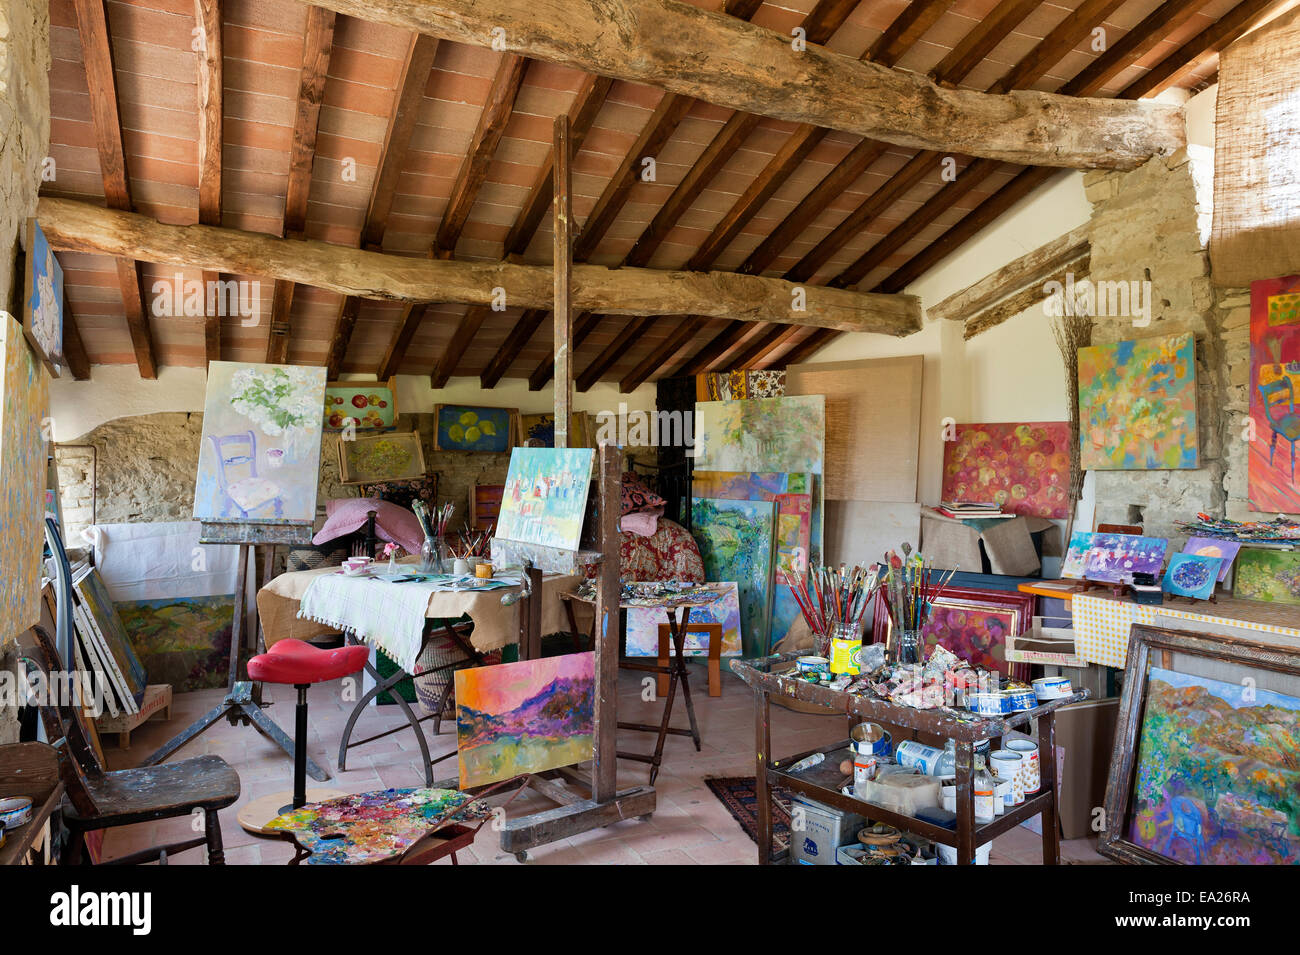 Pittori rustico studio con colorate opere d'arte, pitture e travi a soffitto Foto Stock